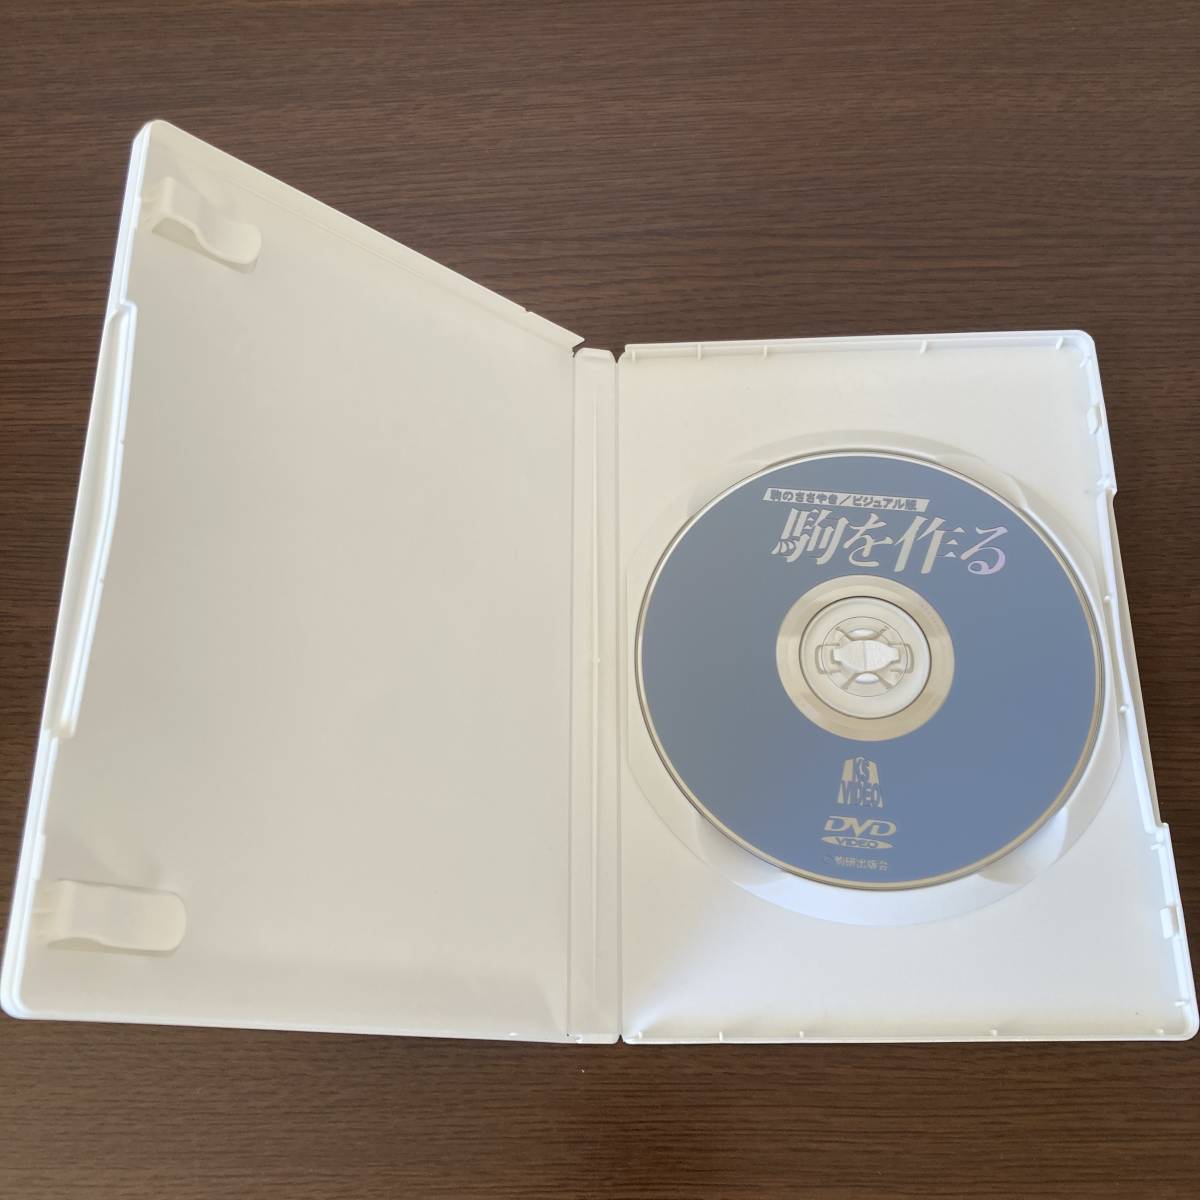 DVD 駒のささやき/ビジュアル版 駒を作る 駒研出版会_画像3